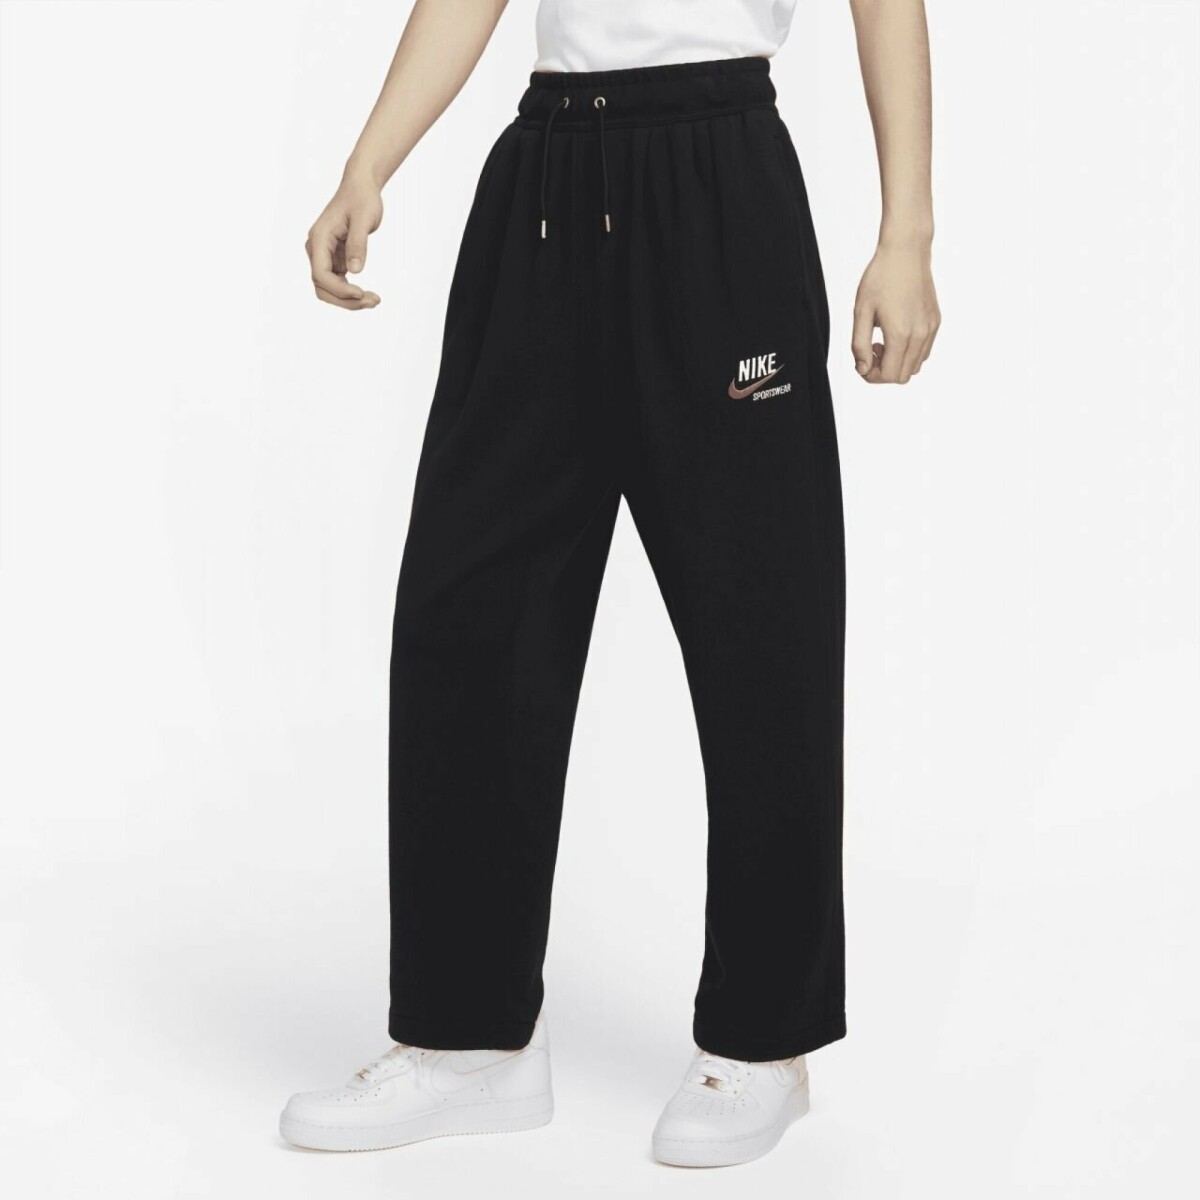 Pantalon Nike Moda Hombre Trend Flc Black/Black - S/C 